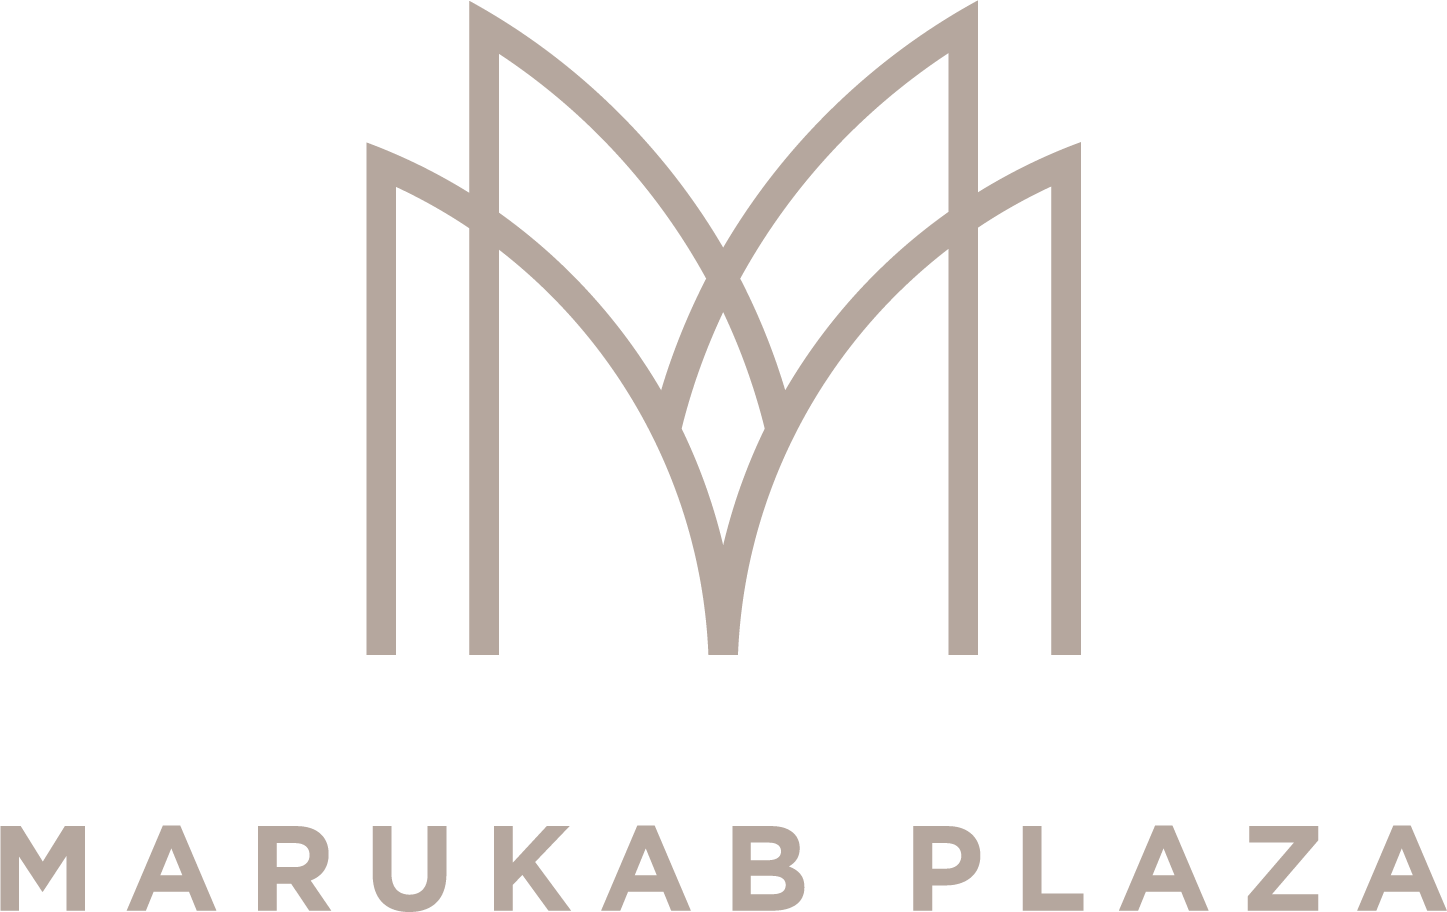 Marukab Plaza